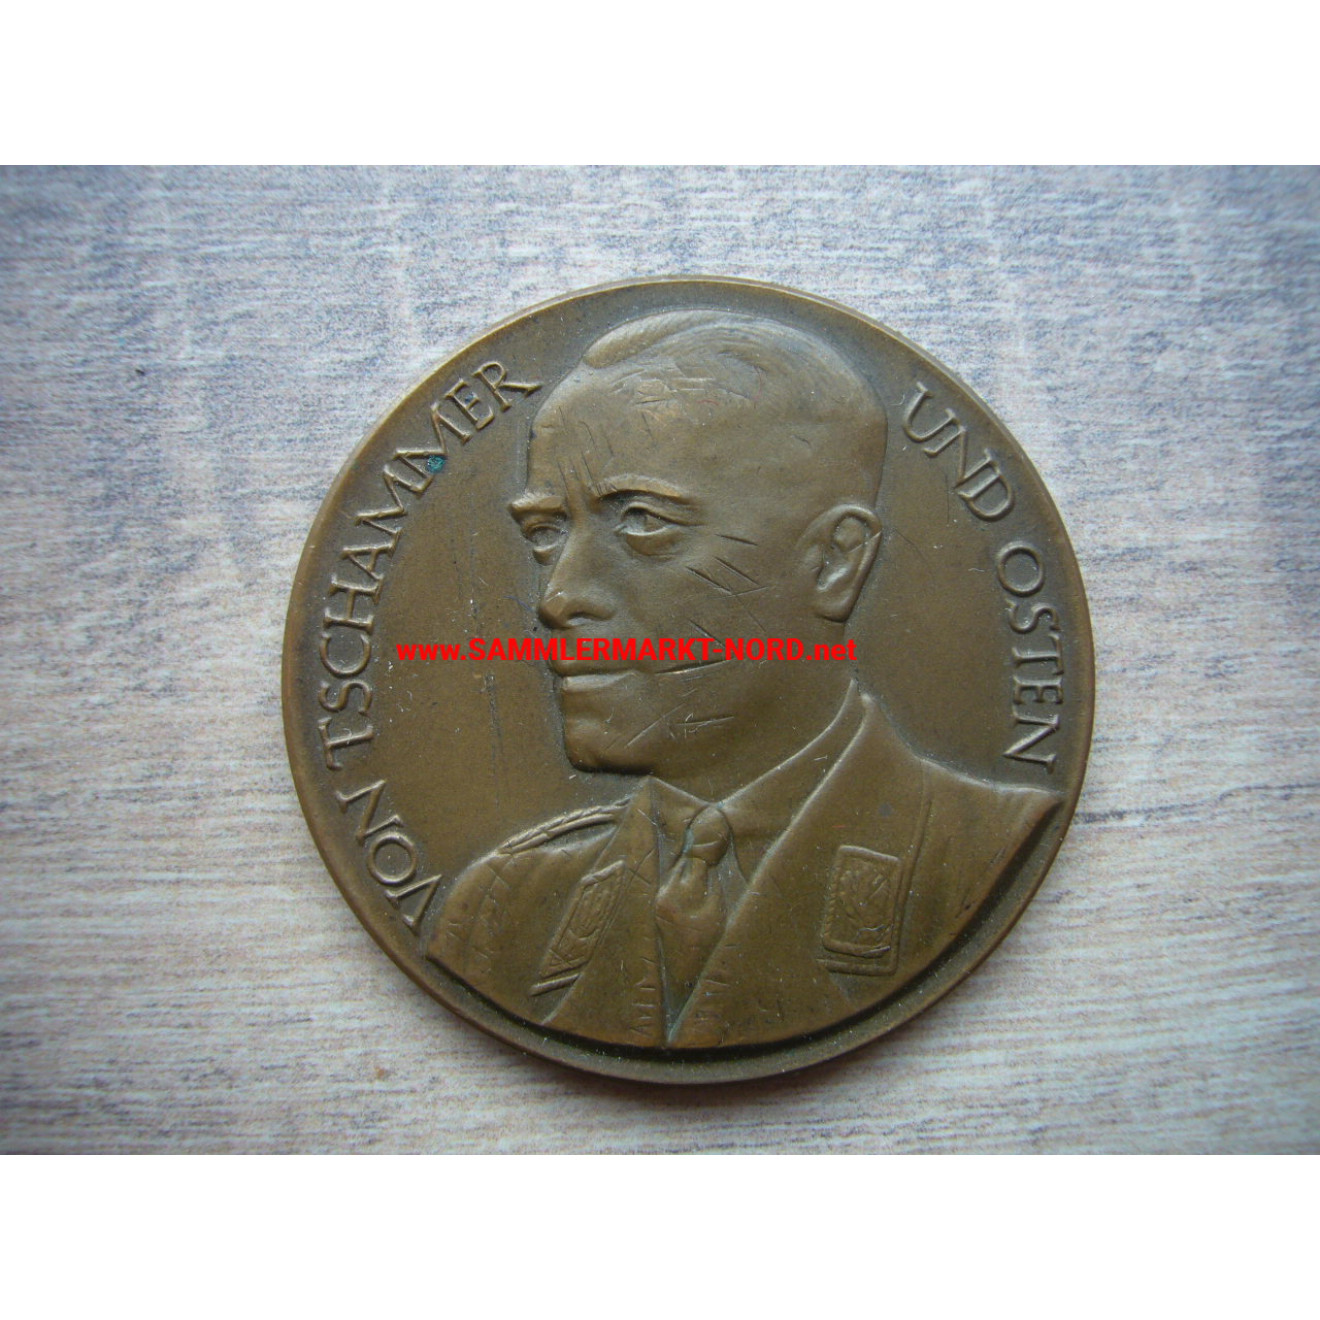 Non-bearable honorary prize of the Reichssportführer von Tschammer and Osten